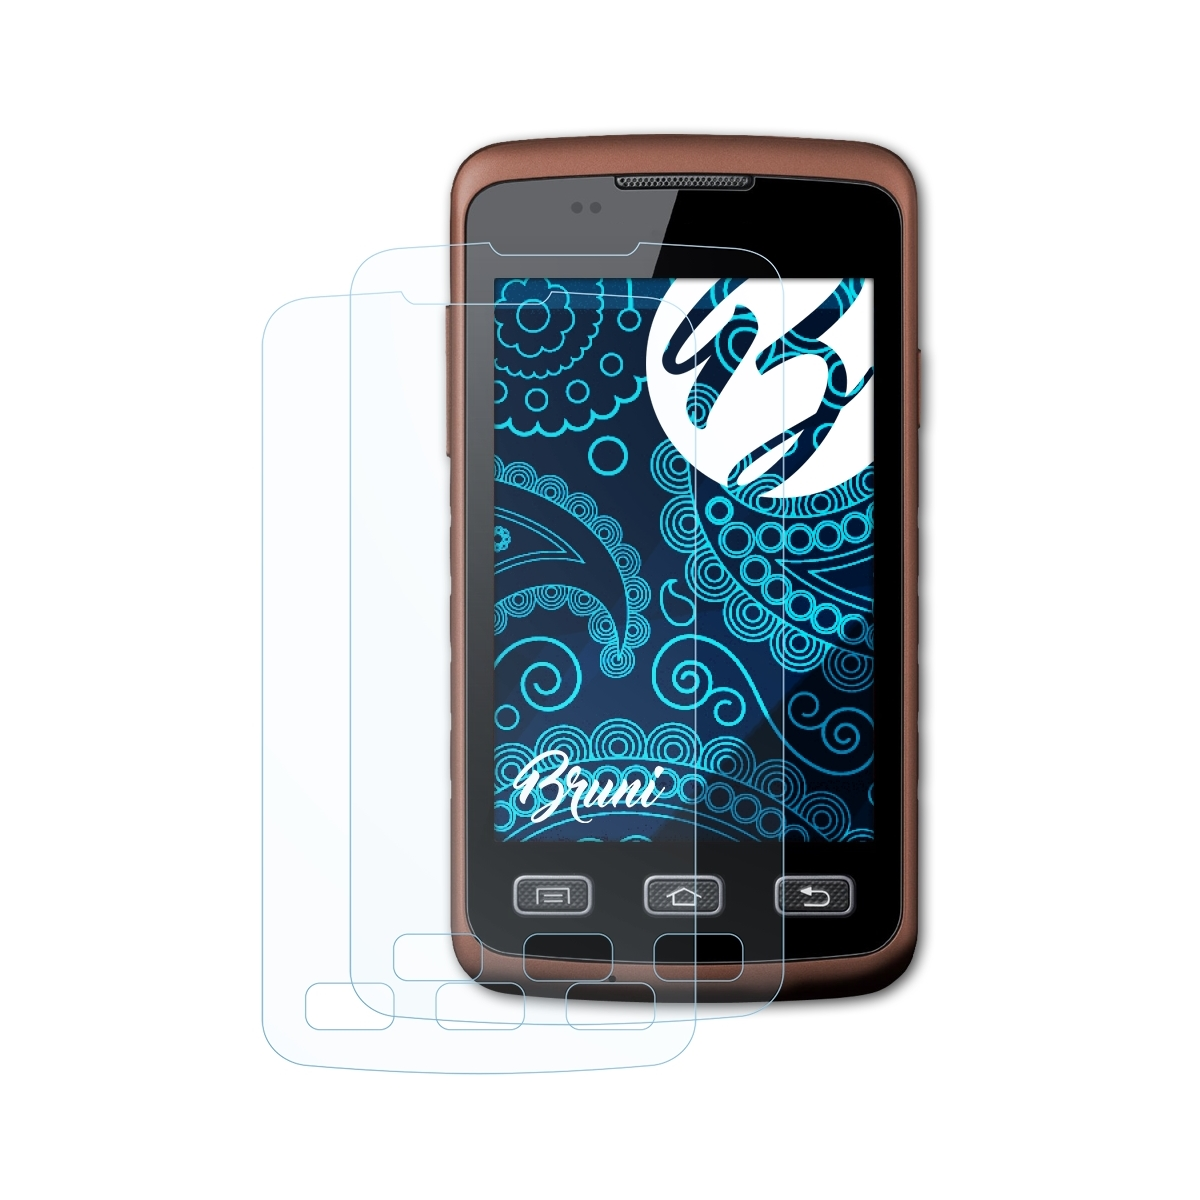 BRUNI 2x Basics-Clear Schutzfolie(für (GT-S5690)) Galaxy Samsung Xcover